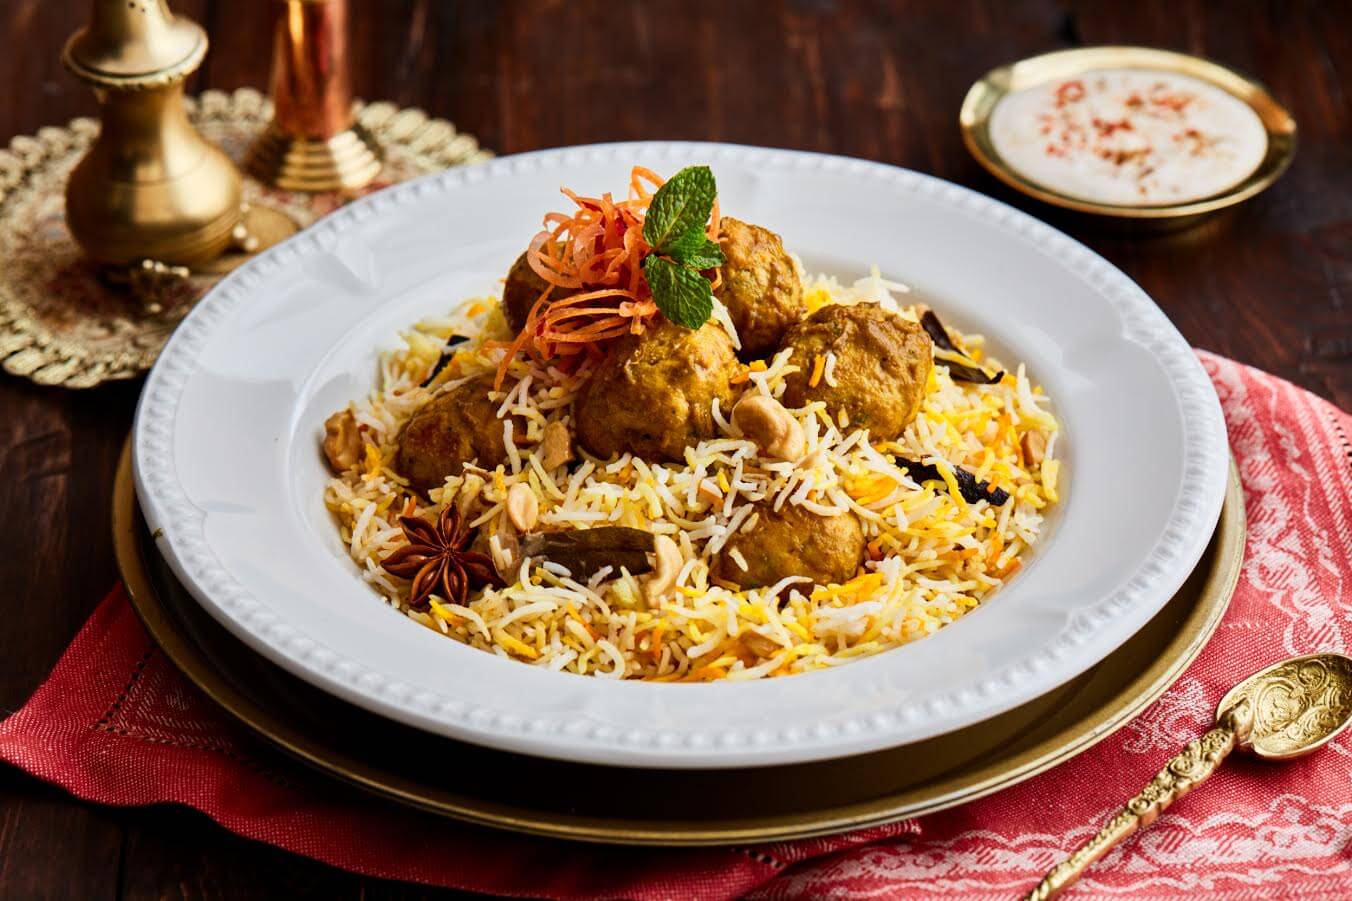 مطعم قصر الهند يطلق قائمة مأكولات برياني ايه كاس - عين دبي